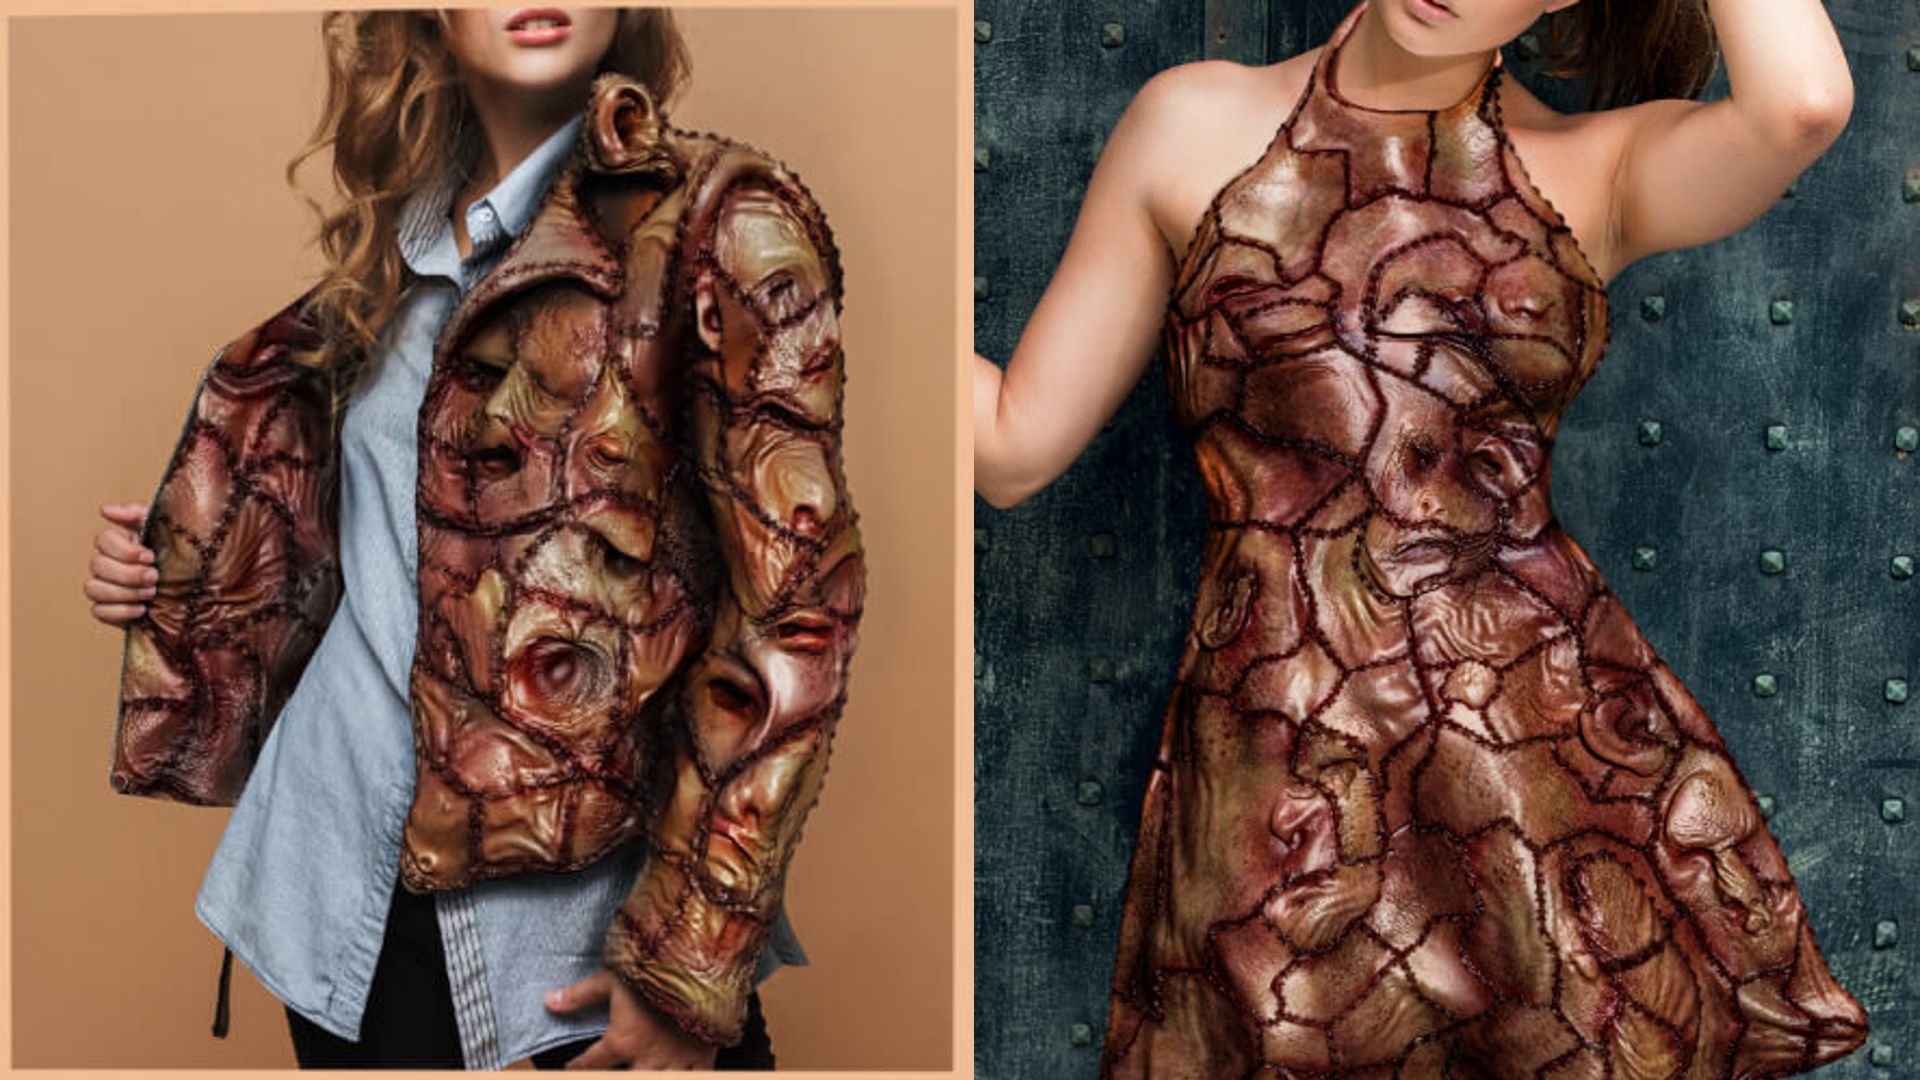 Imágenes promocionales de la falsa marca de ropa hecha con piel humana.